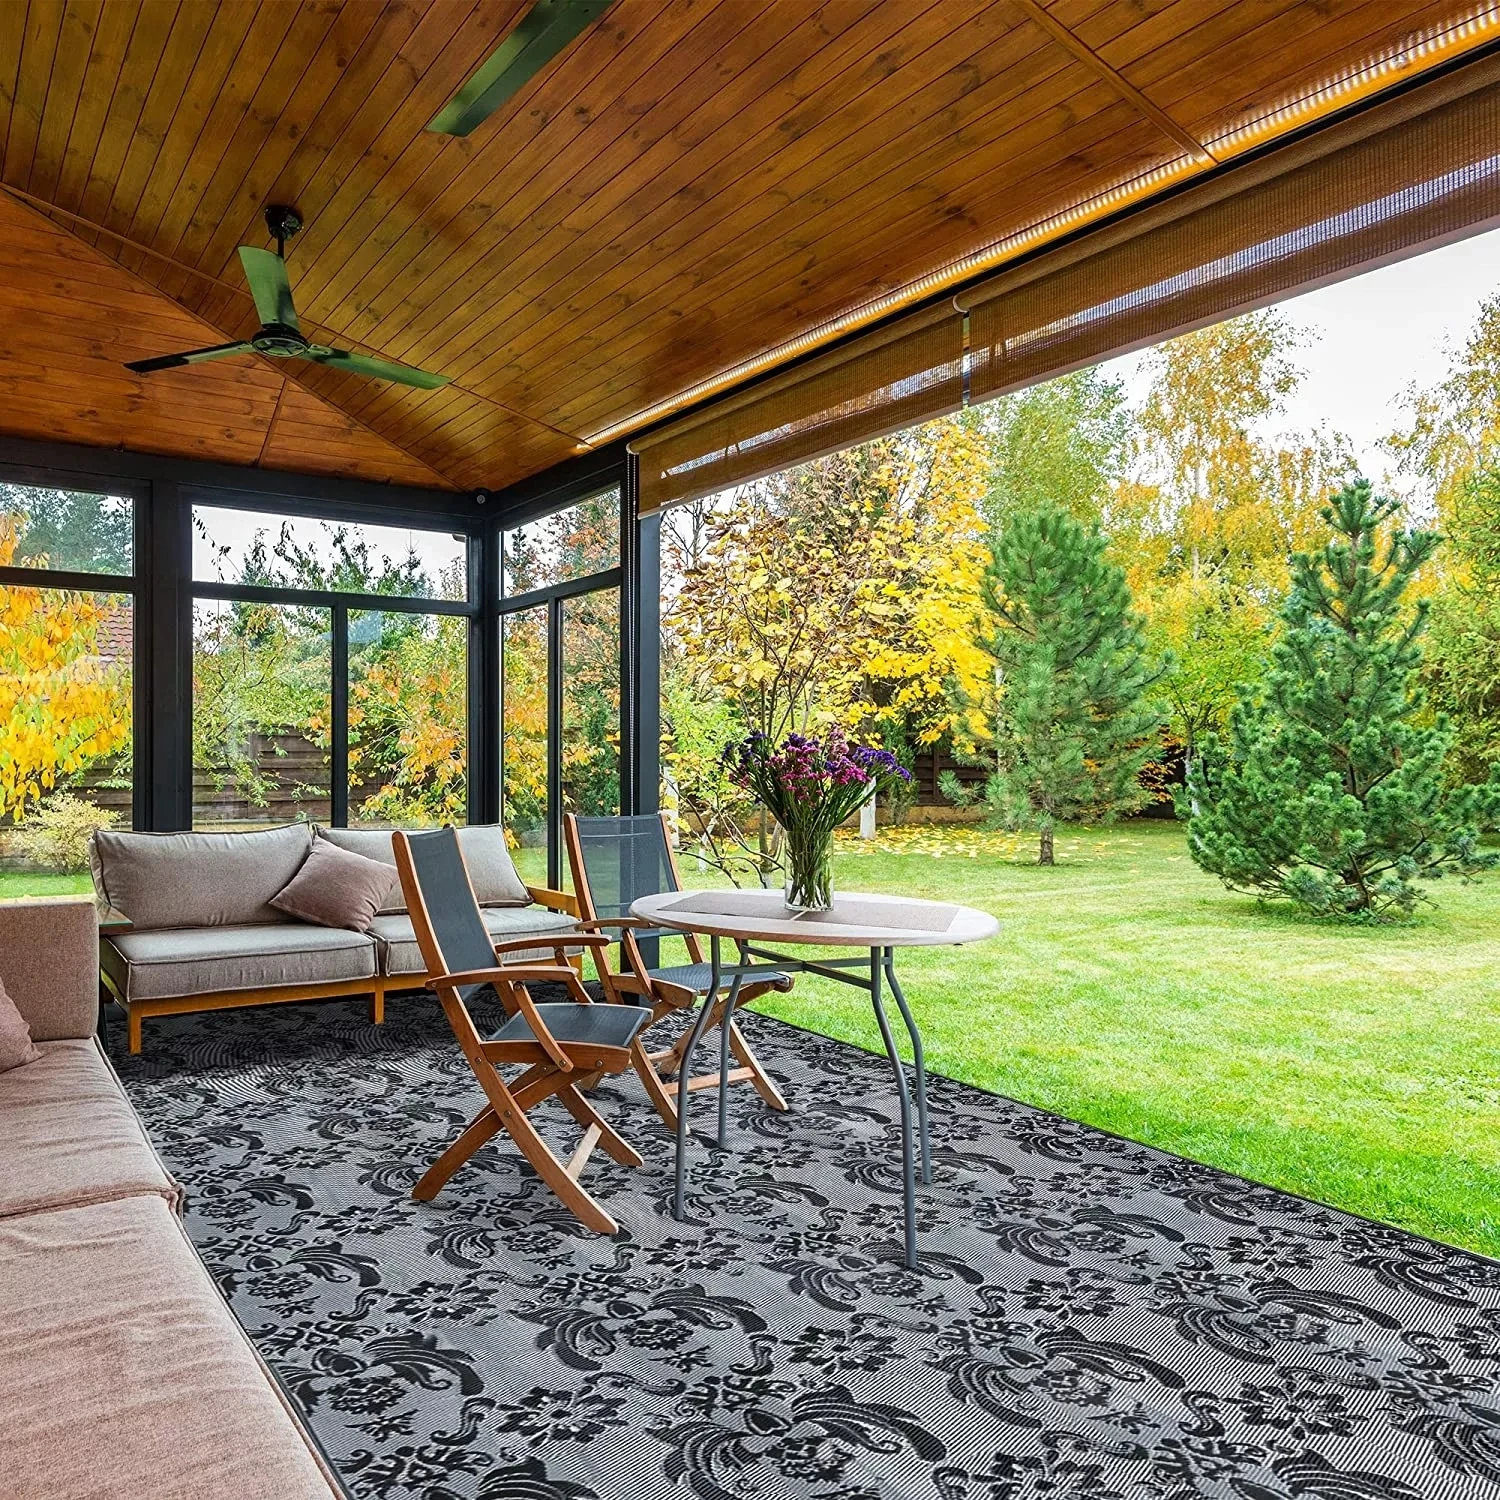 https://ae01.alicdn.com/kf/S915f3147875b44a7be01830d3a302e68h/5x8ft-Area-Rug-Indoor-Outdoor-Carpet-for-Bedroom-Living-Room-Balcony-Patio-Home-Garden-Folding-Reversible.jpg